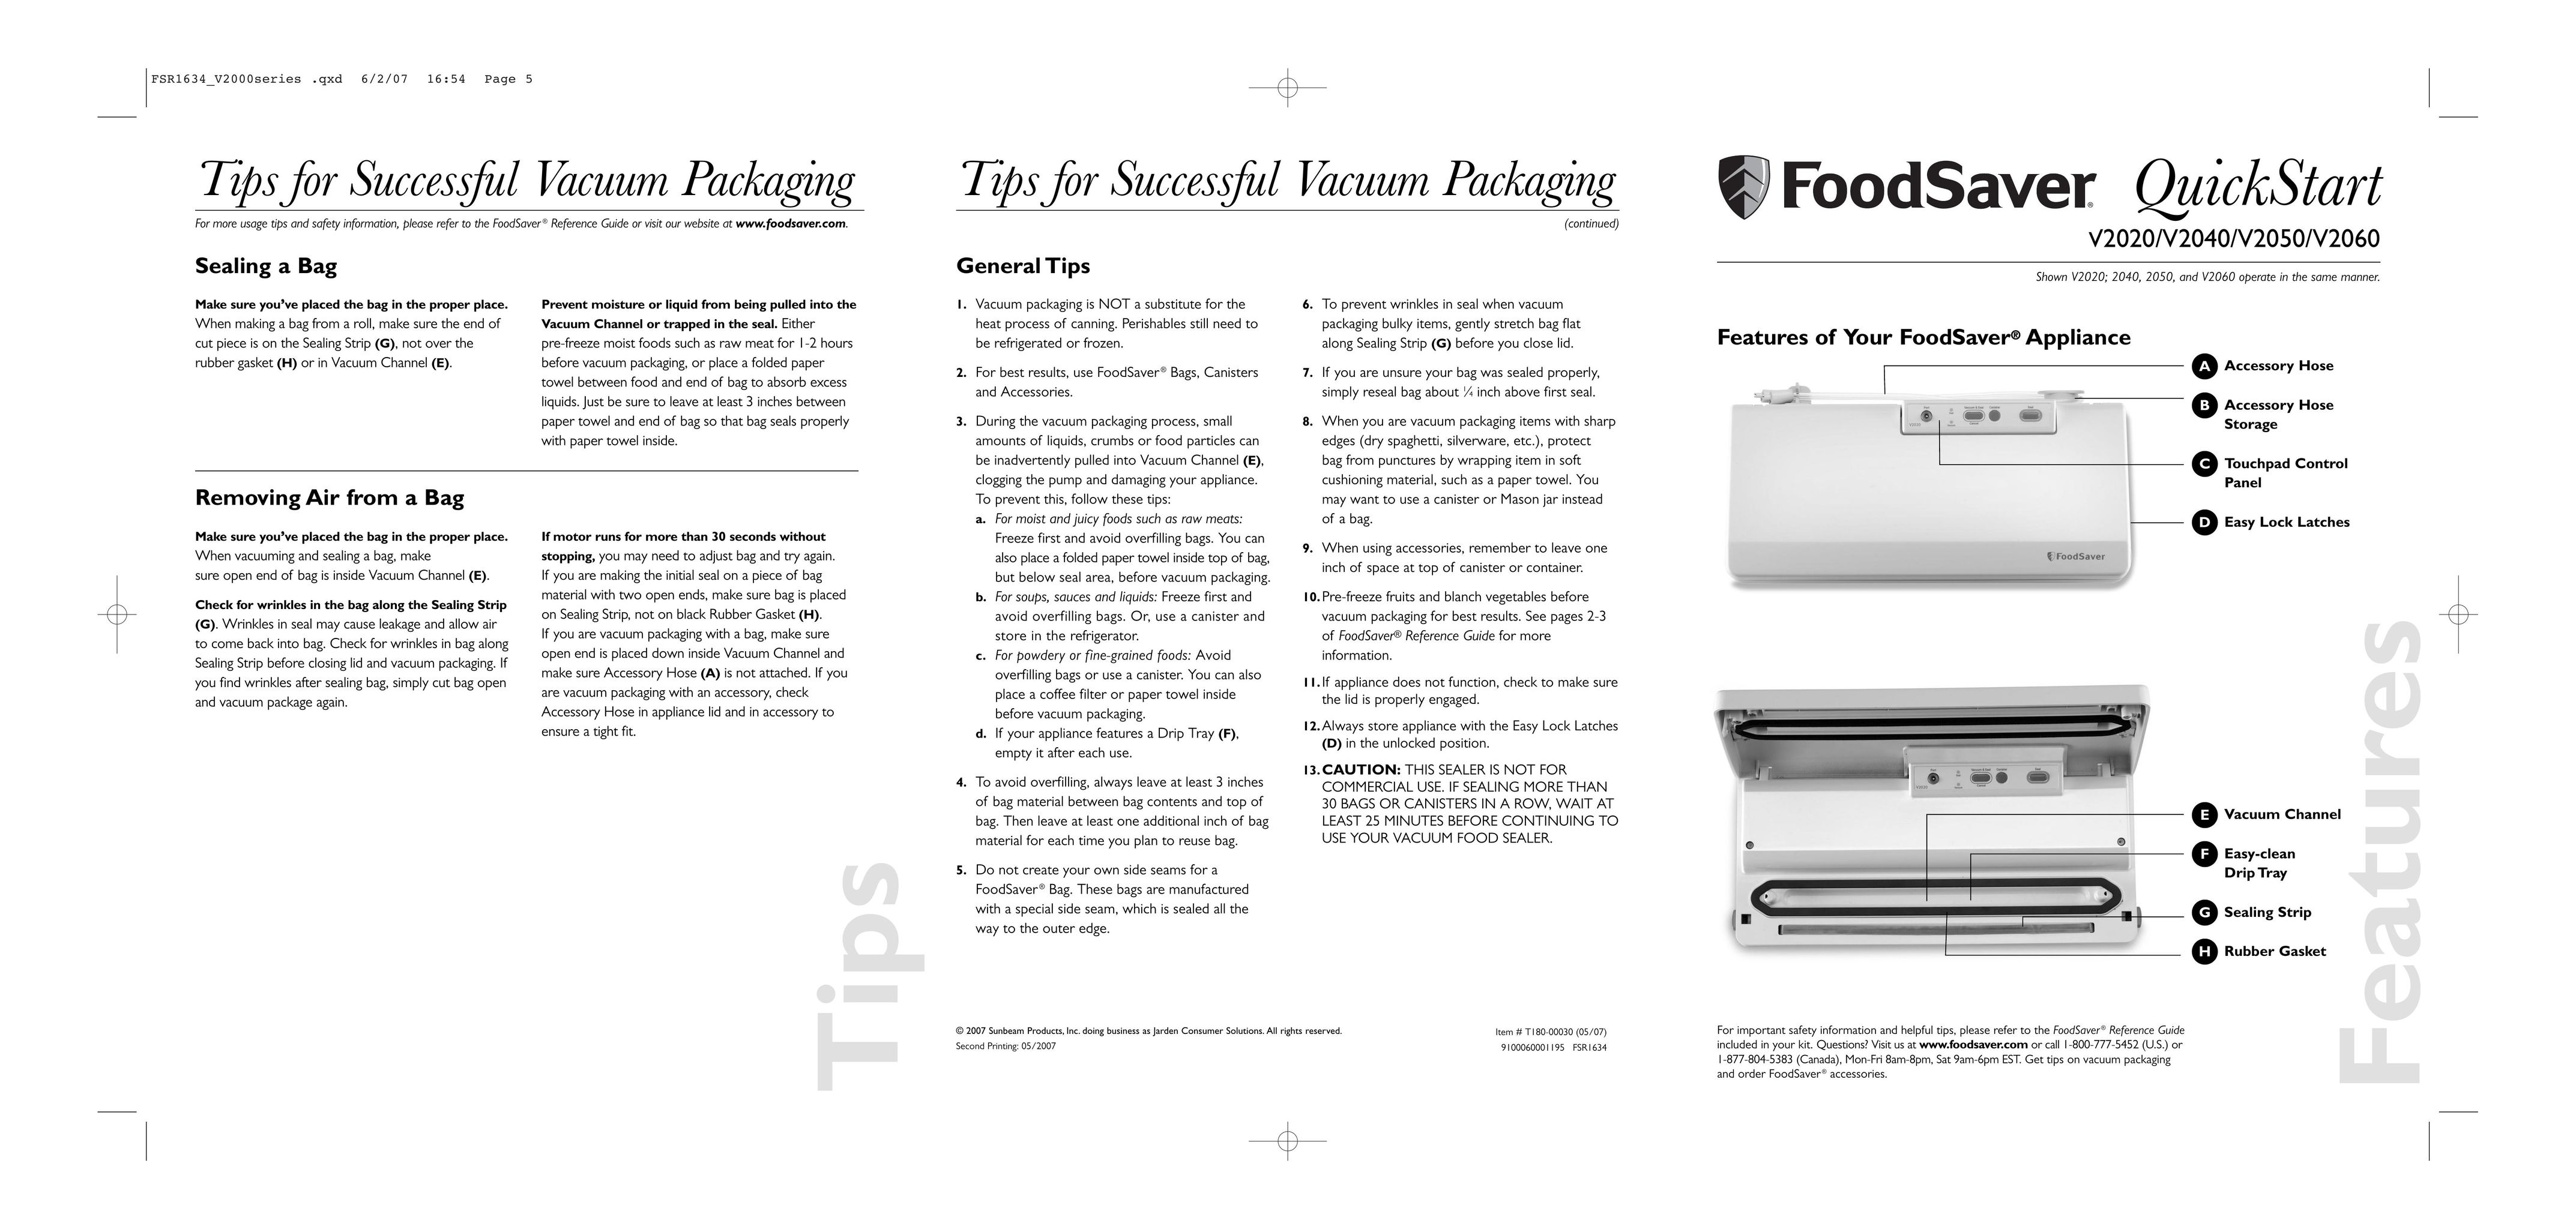 FoodSaver V2060 Food Saver User Manual